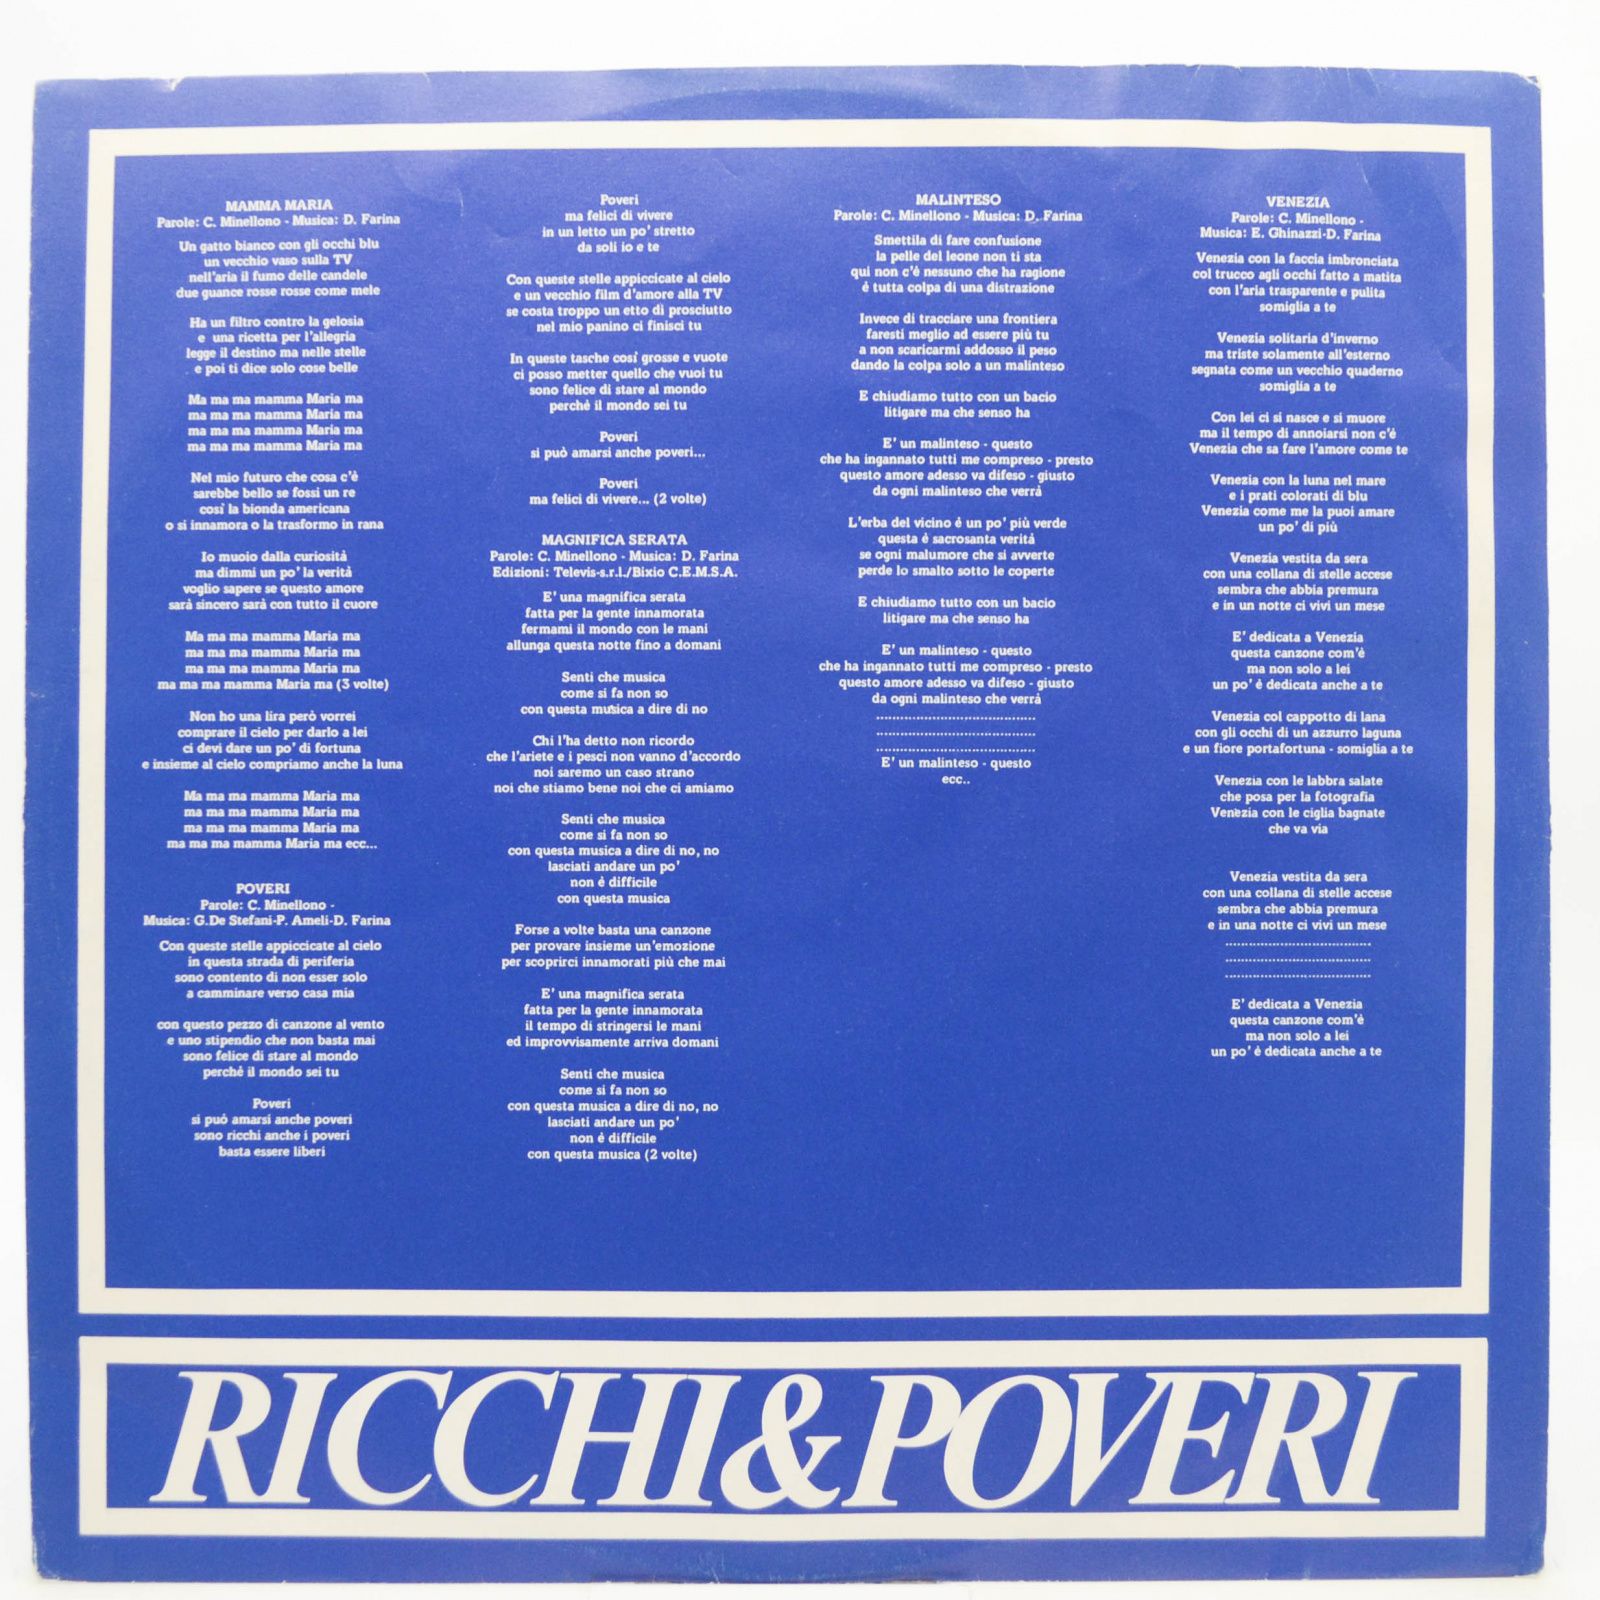 Ricchi & Poveri — Mamma Maria (Italy), 1982